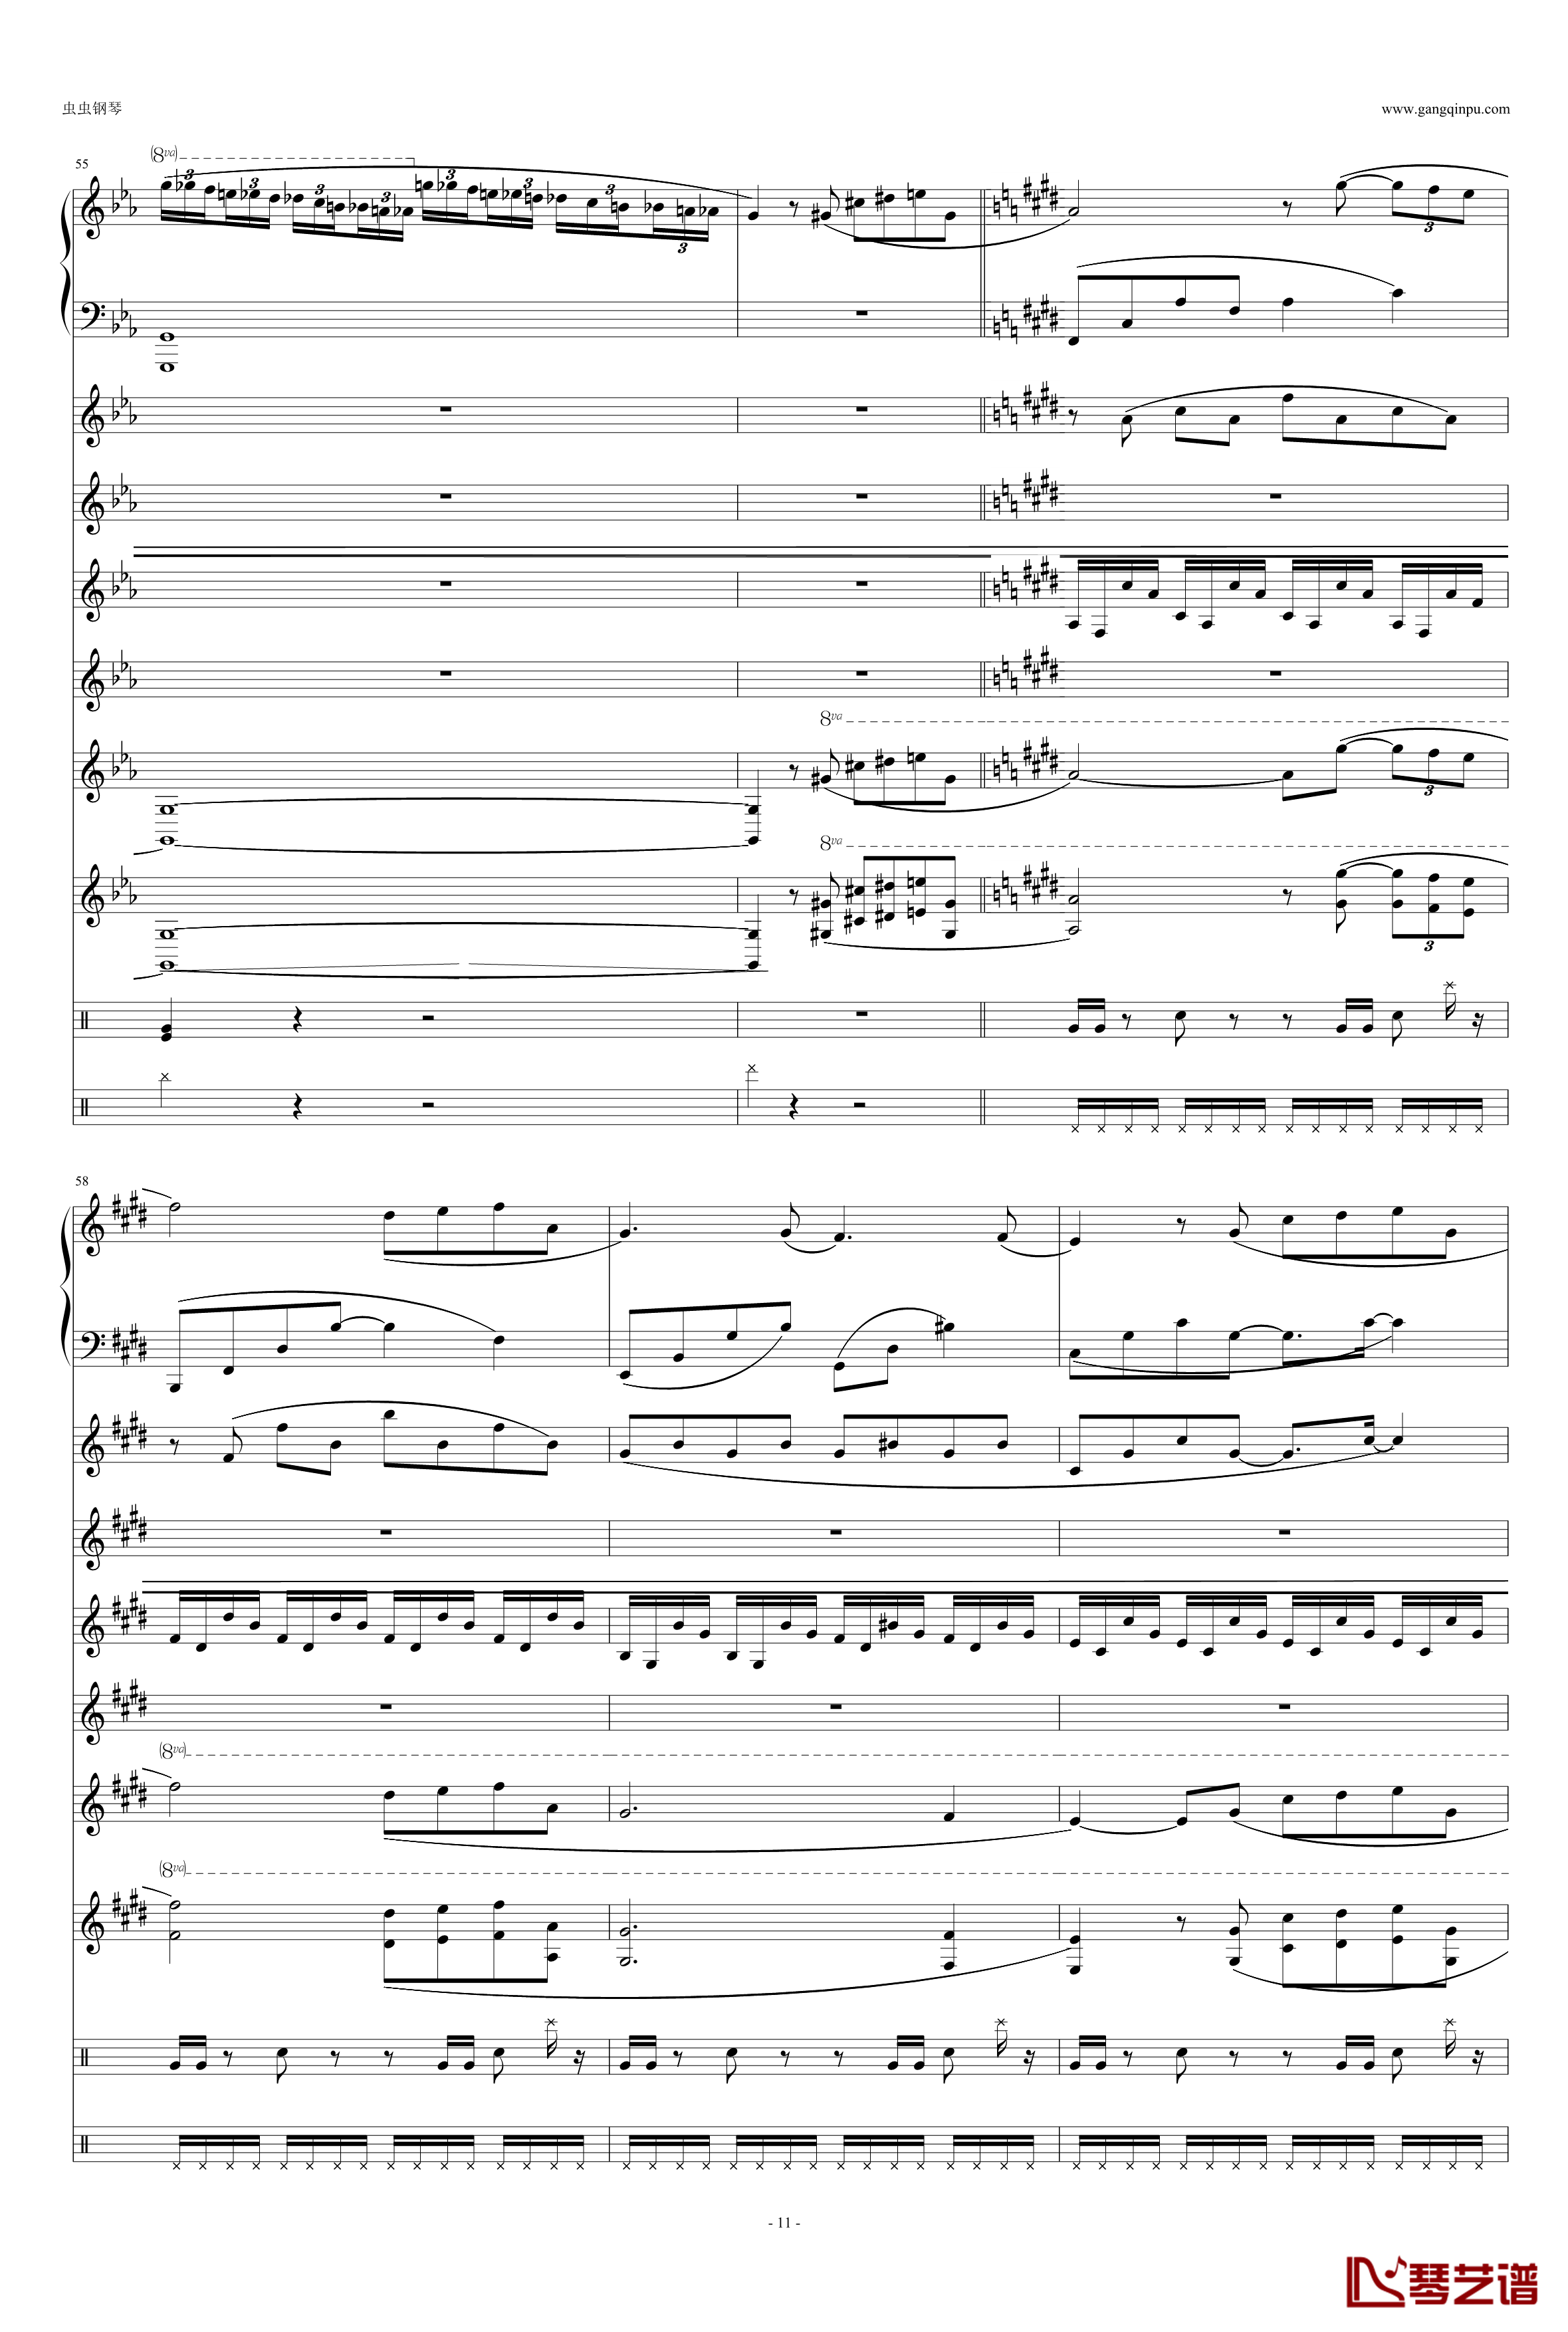 利鲁之歌钢琴谱-leeloos theme-马克西姆-Maksim·Mrvica11